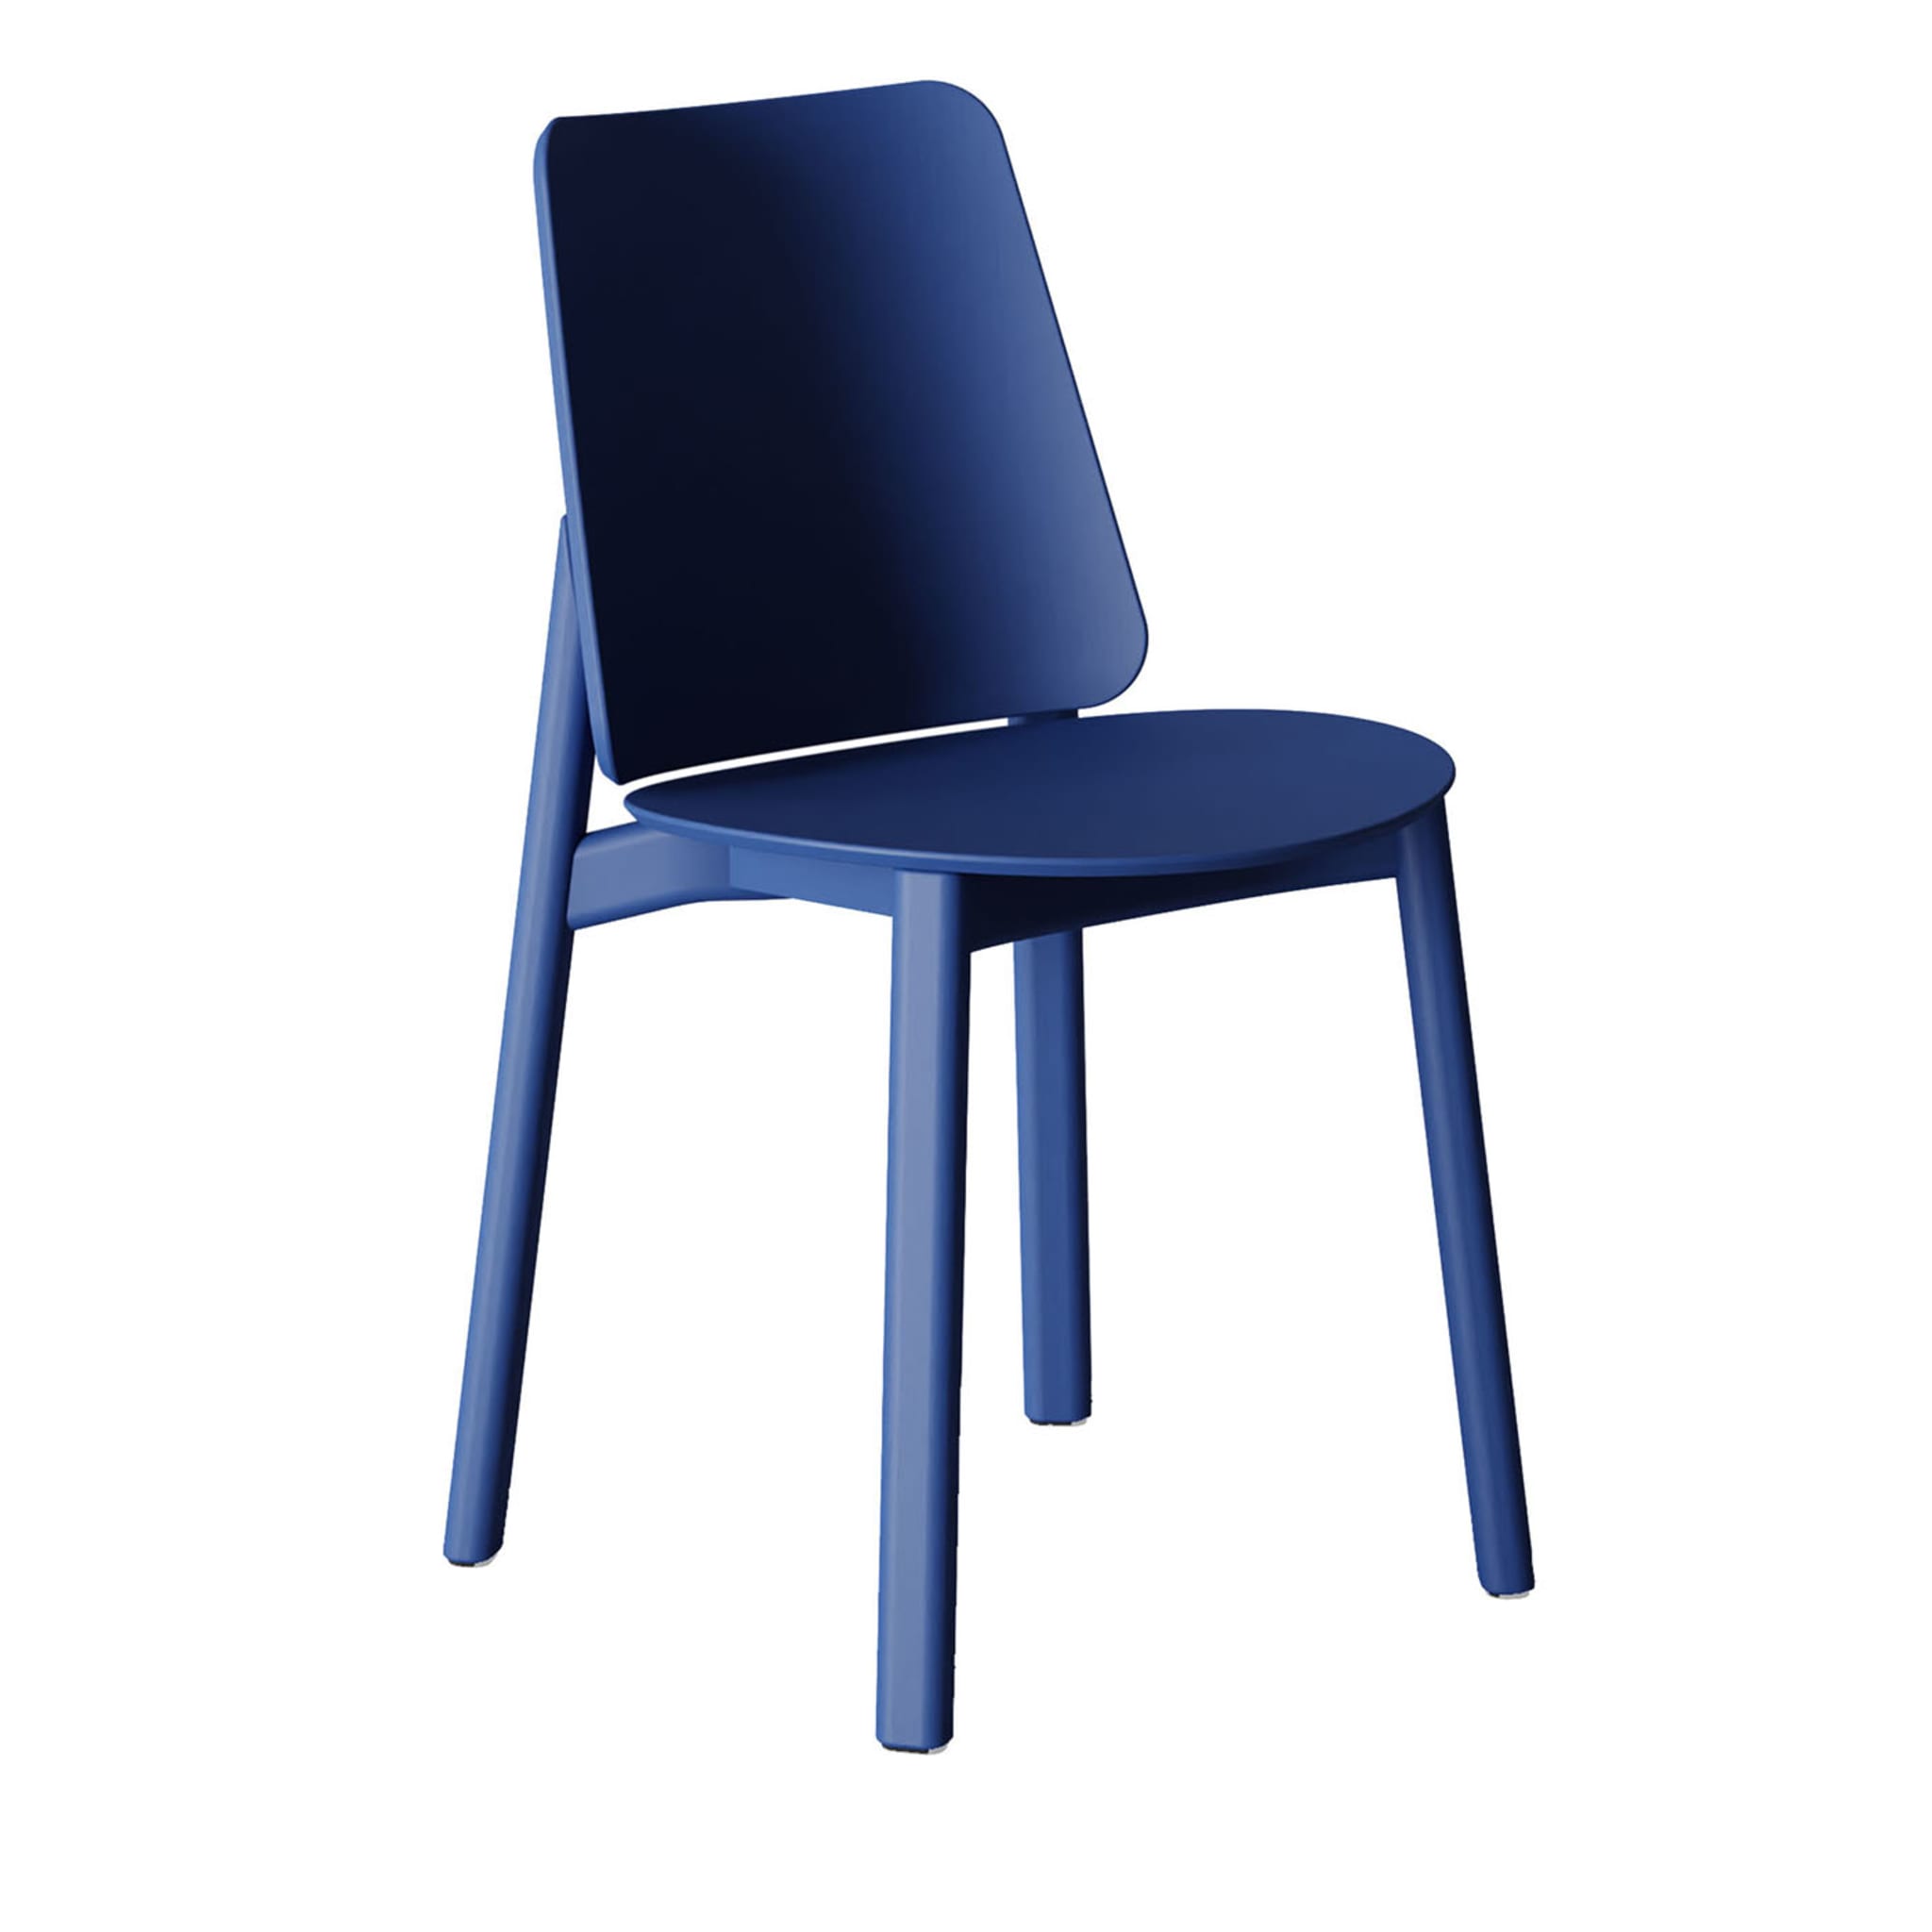 Billa Blauer Stuhl von Claudio Avetta - Hauptansicht